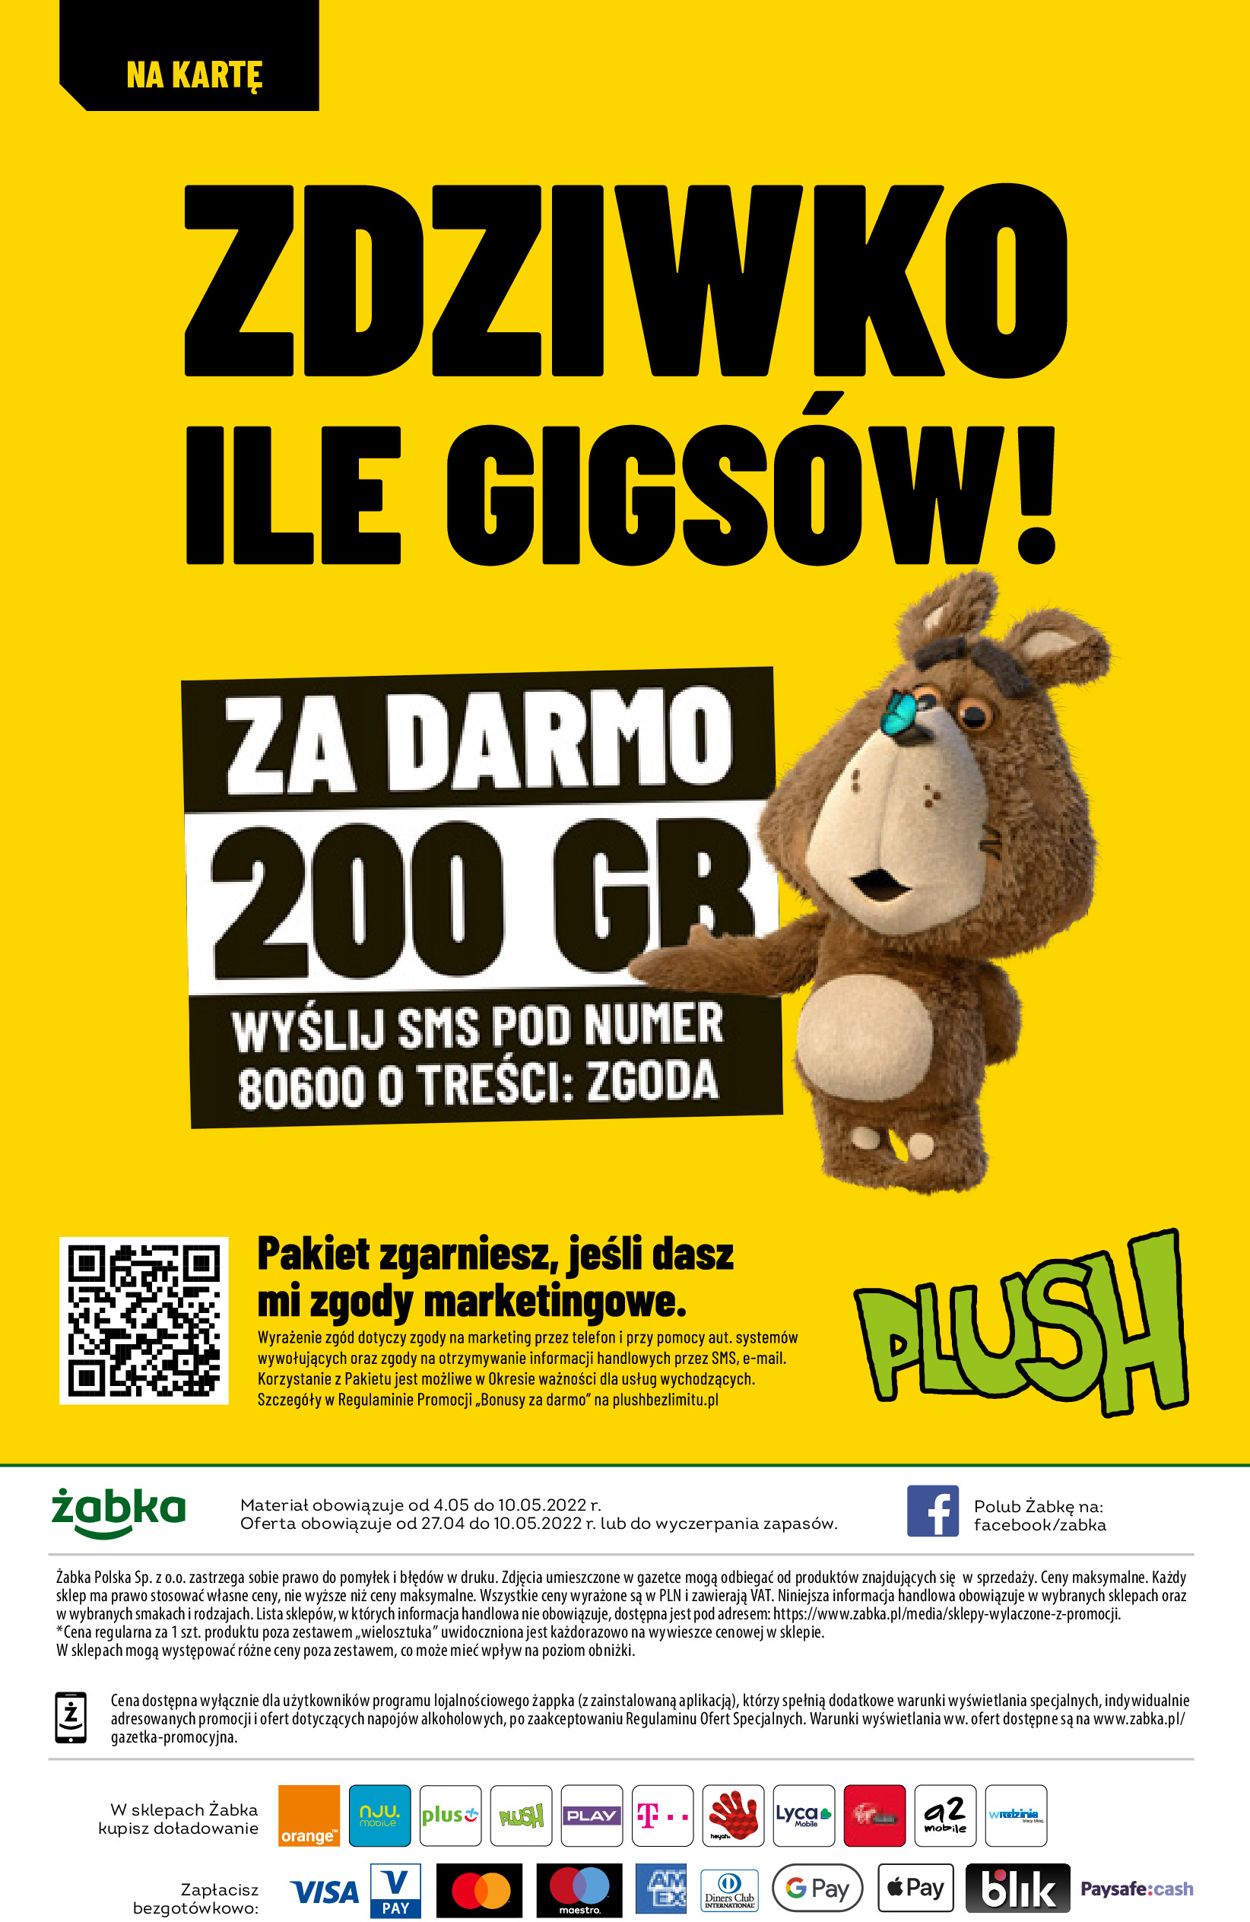 Fresh market Gazetka od 04.05.2022